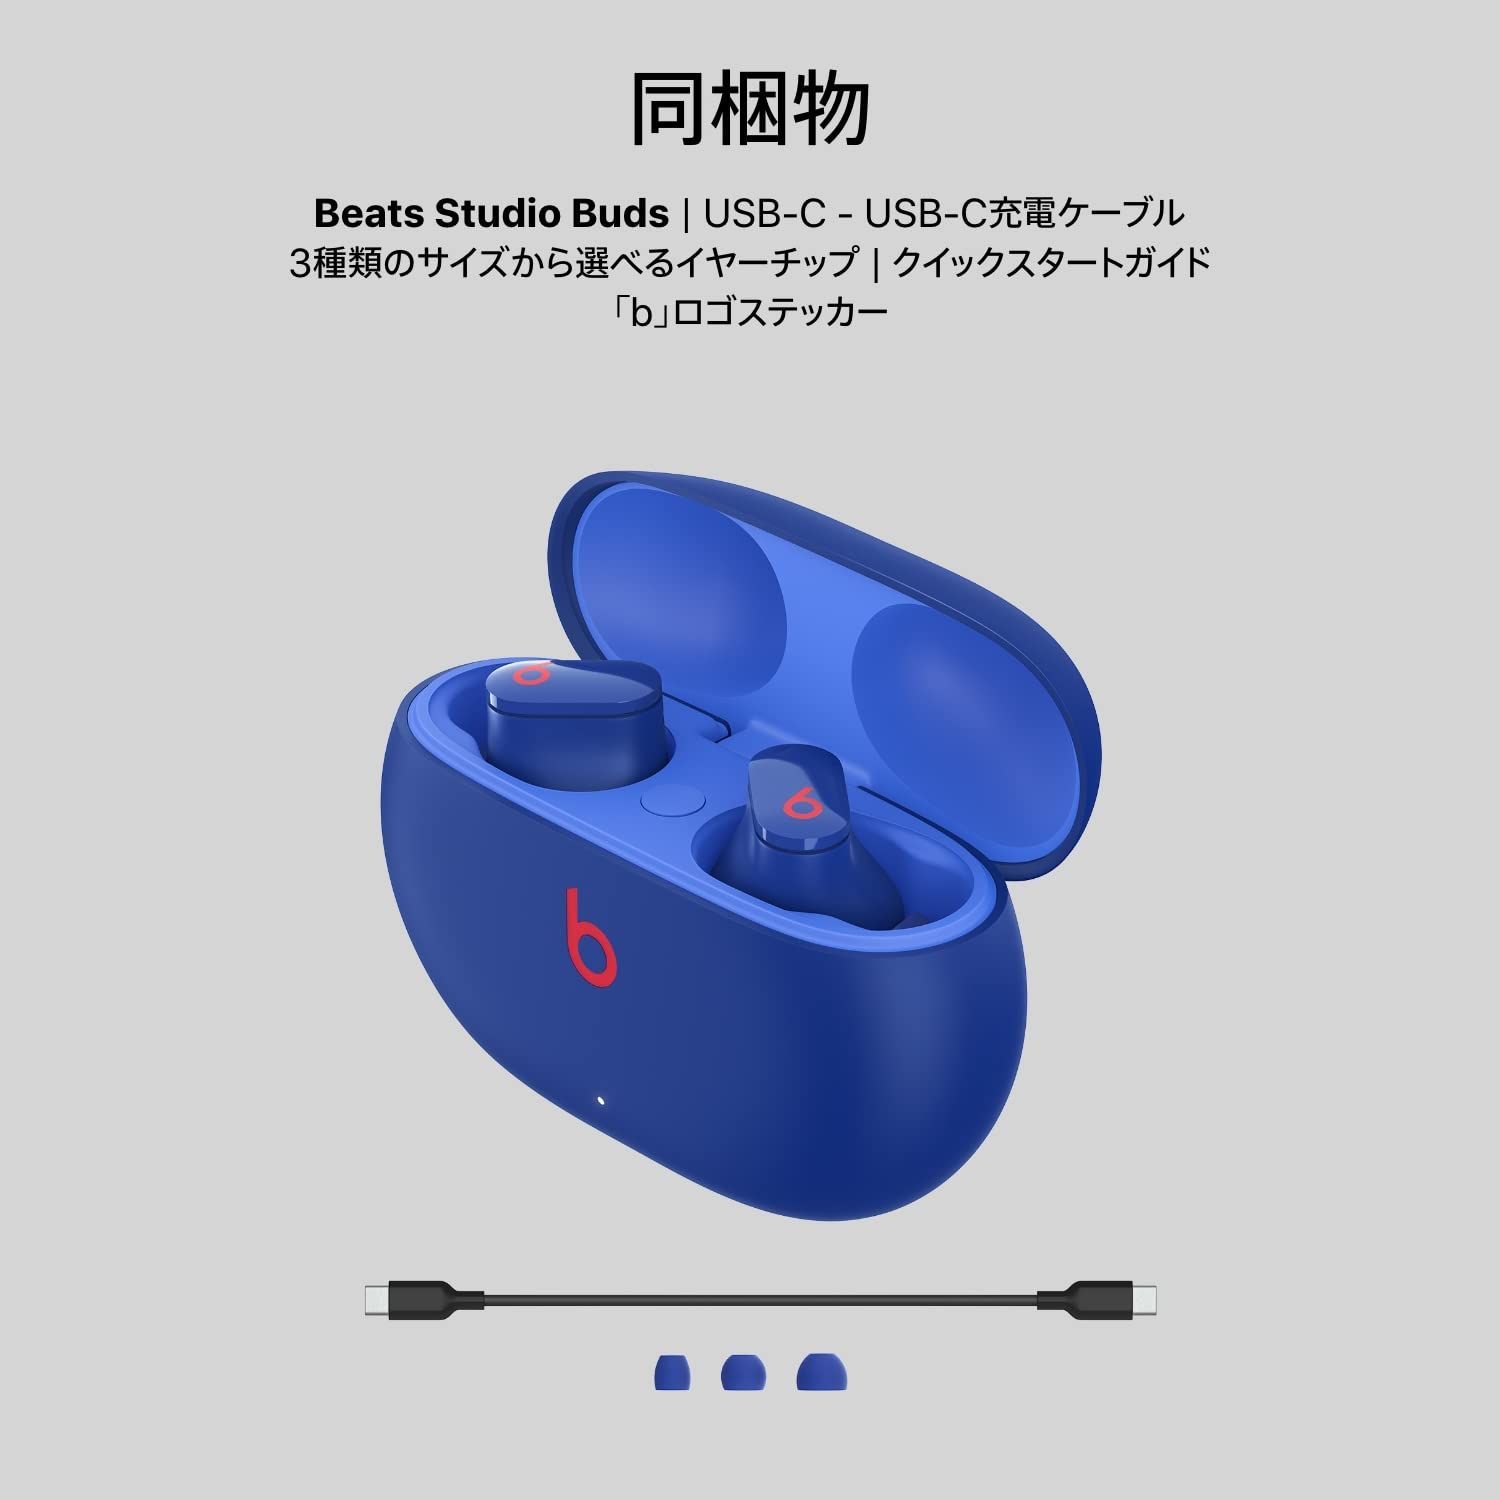 【新品】Beats Studio Buds オーシャンブルー ワイヤレスイヤホン